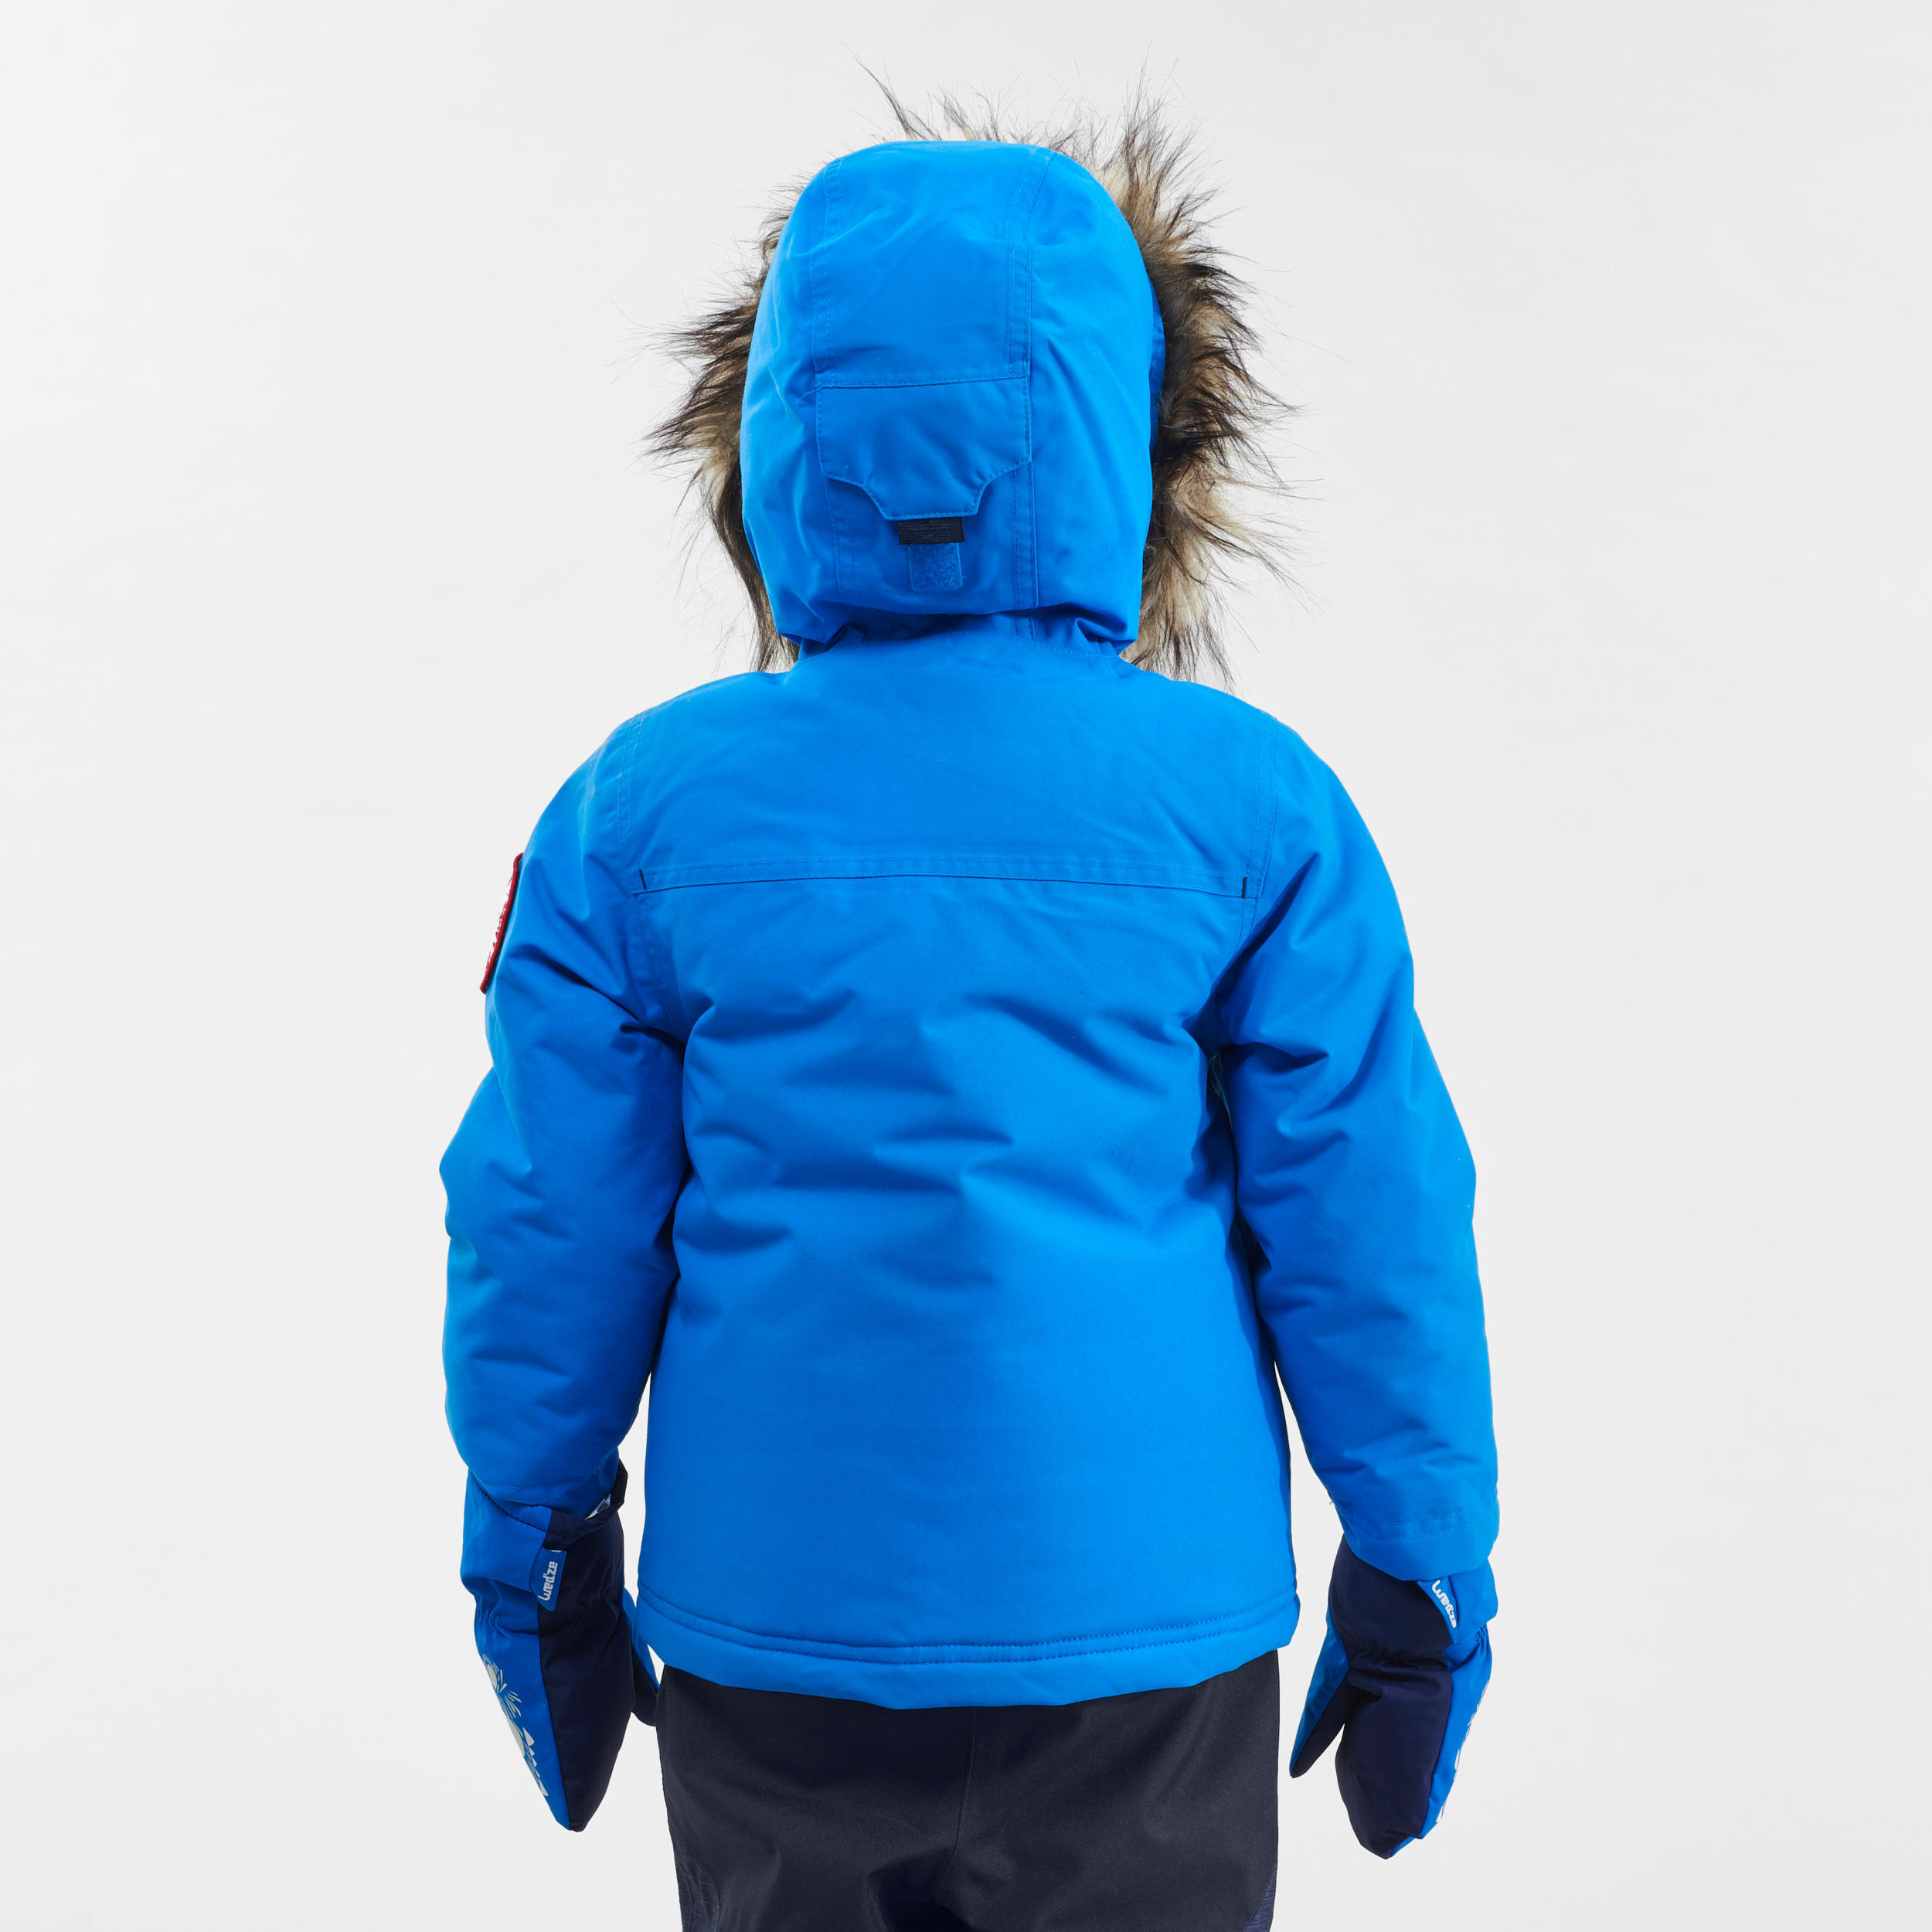 Kids’ Winter Waterproof Hiking Parka SH500 Ultra-Warm 2-6 Years 6/9